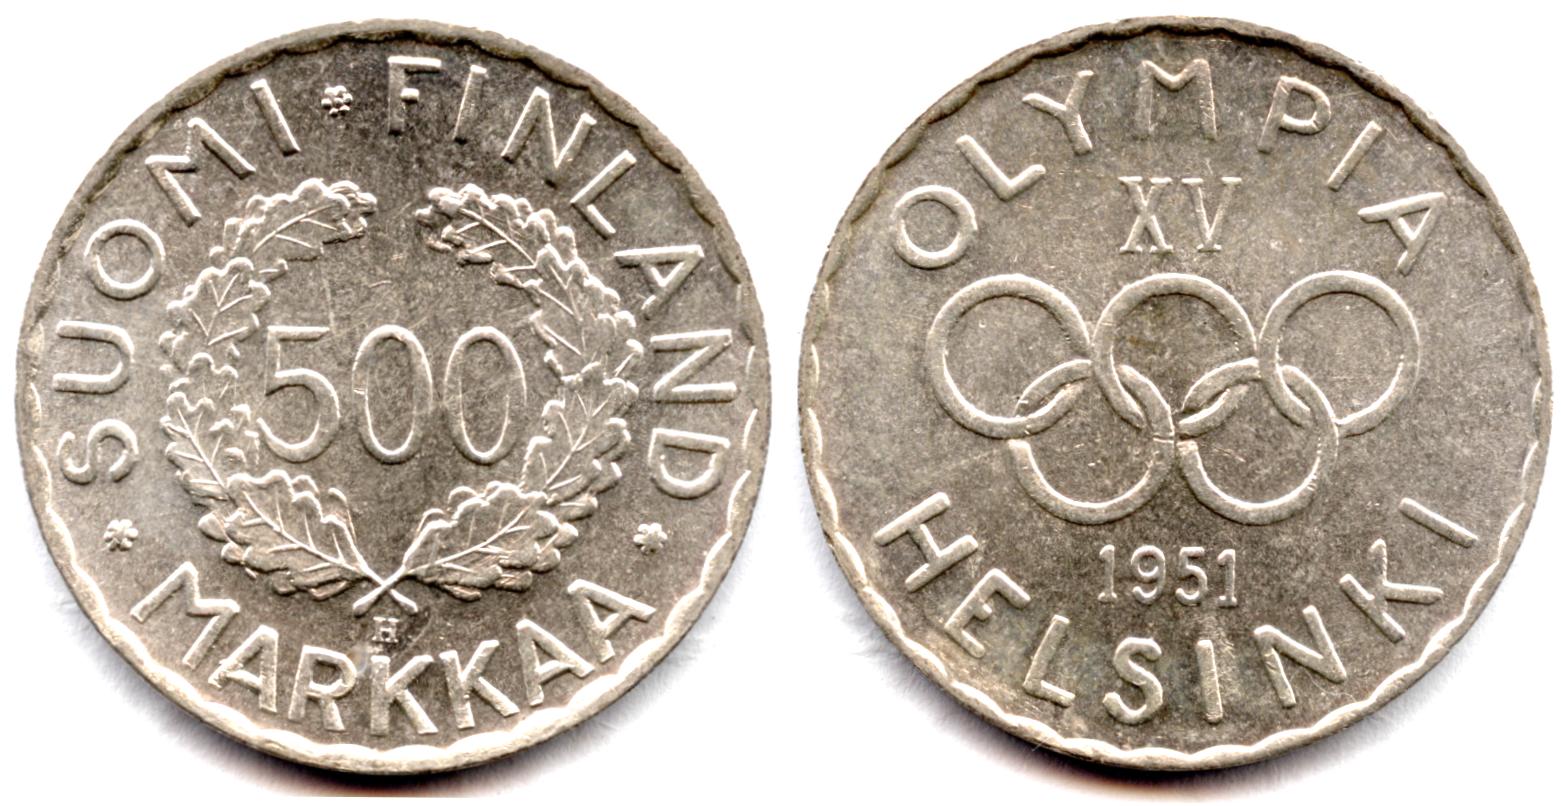 Maailman ensimmäinen moderni olympiaraha lyötiin Helsingin vuoden 1952 kesäolympialaisten kunniaksi.